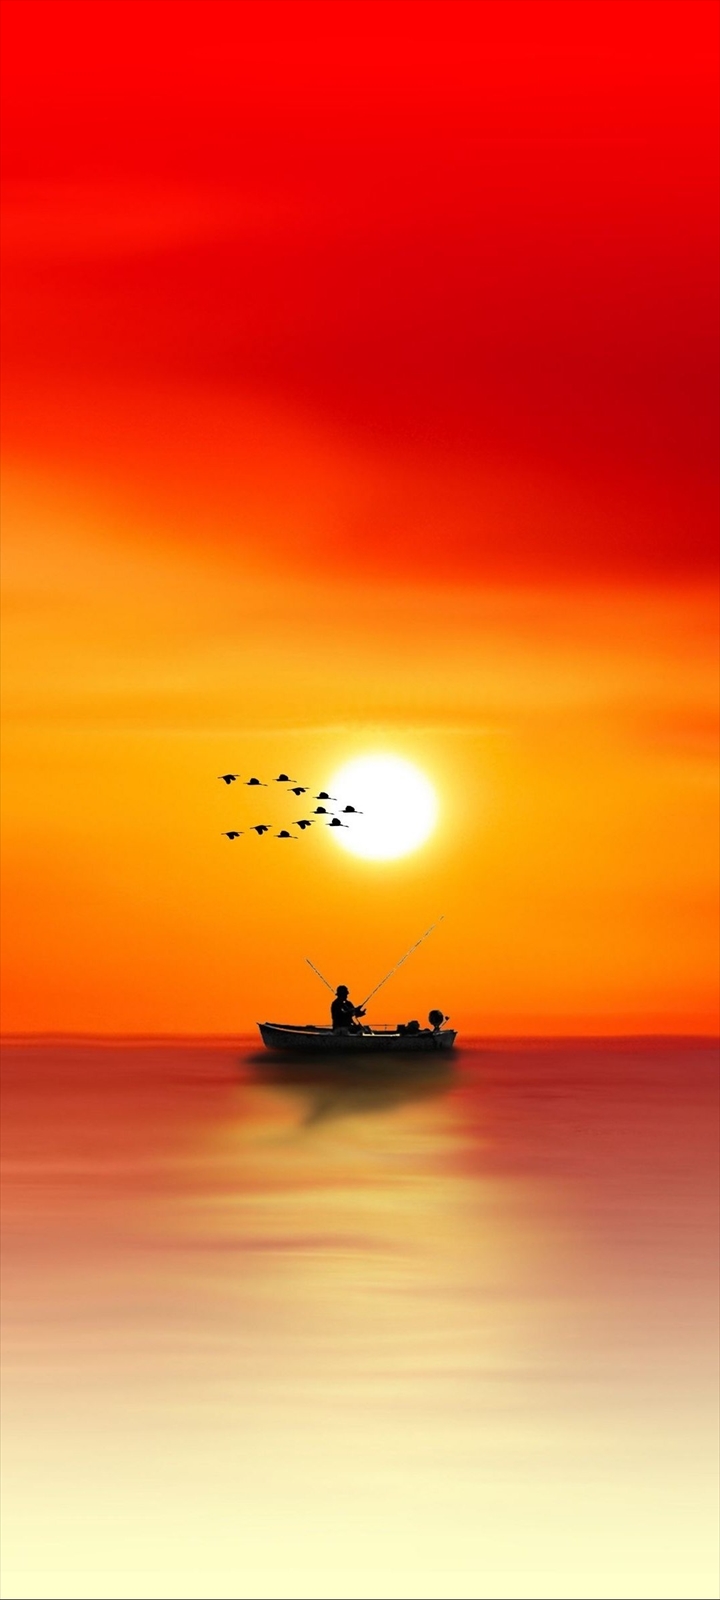 ボートで釣りをする人と渡り鳥と夕日 Moto G9 Play 壁紙 待ち受け スマラン